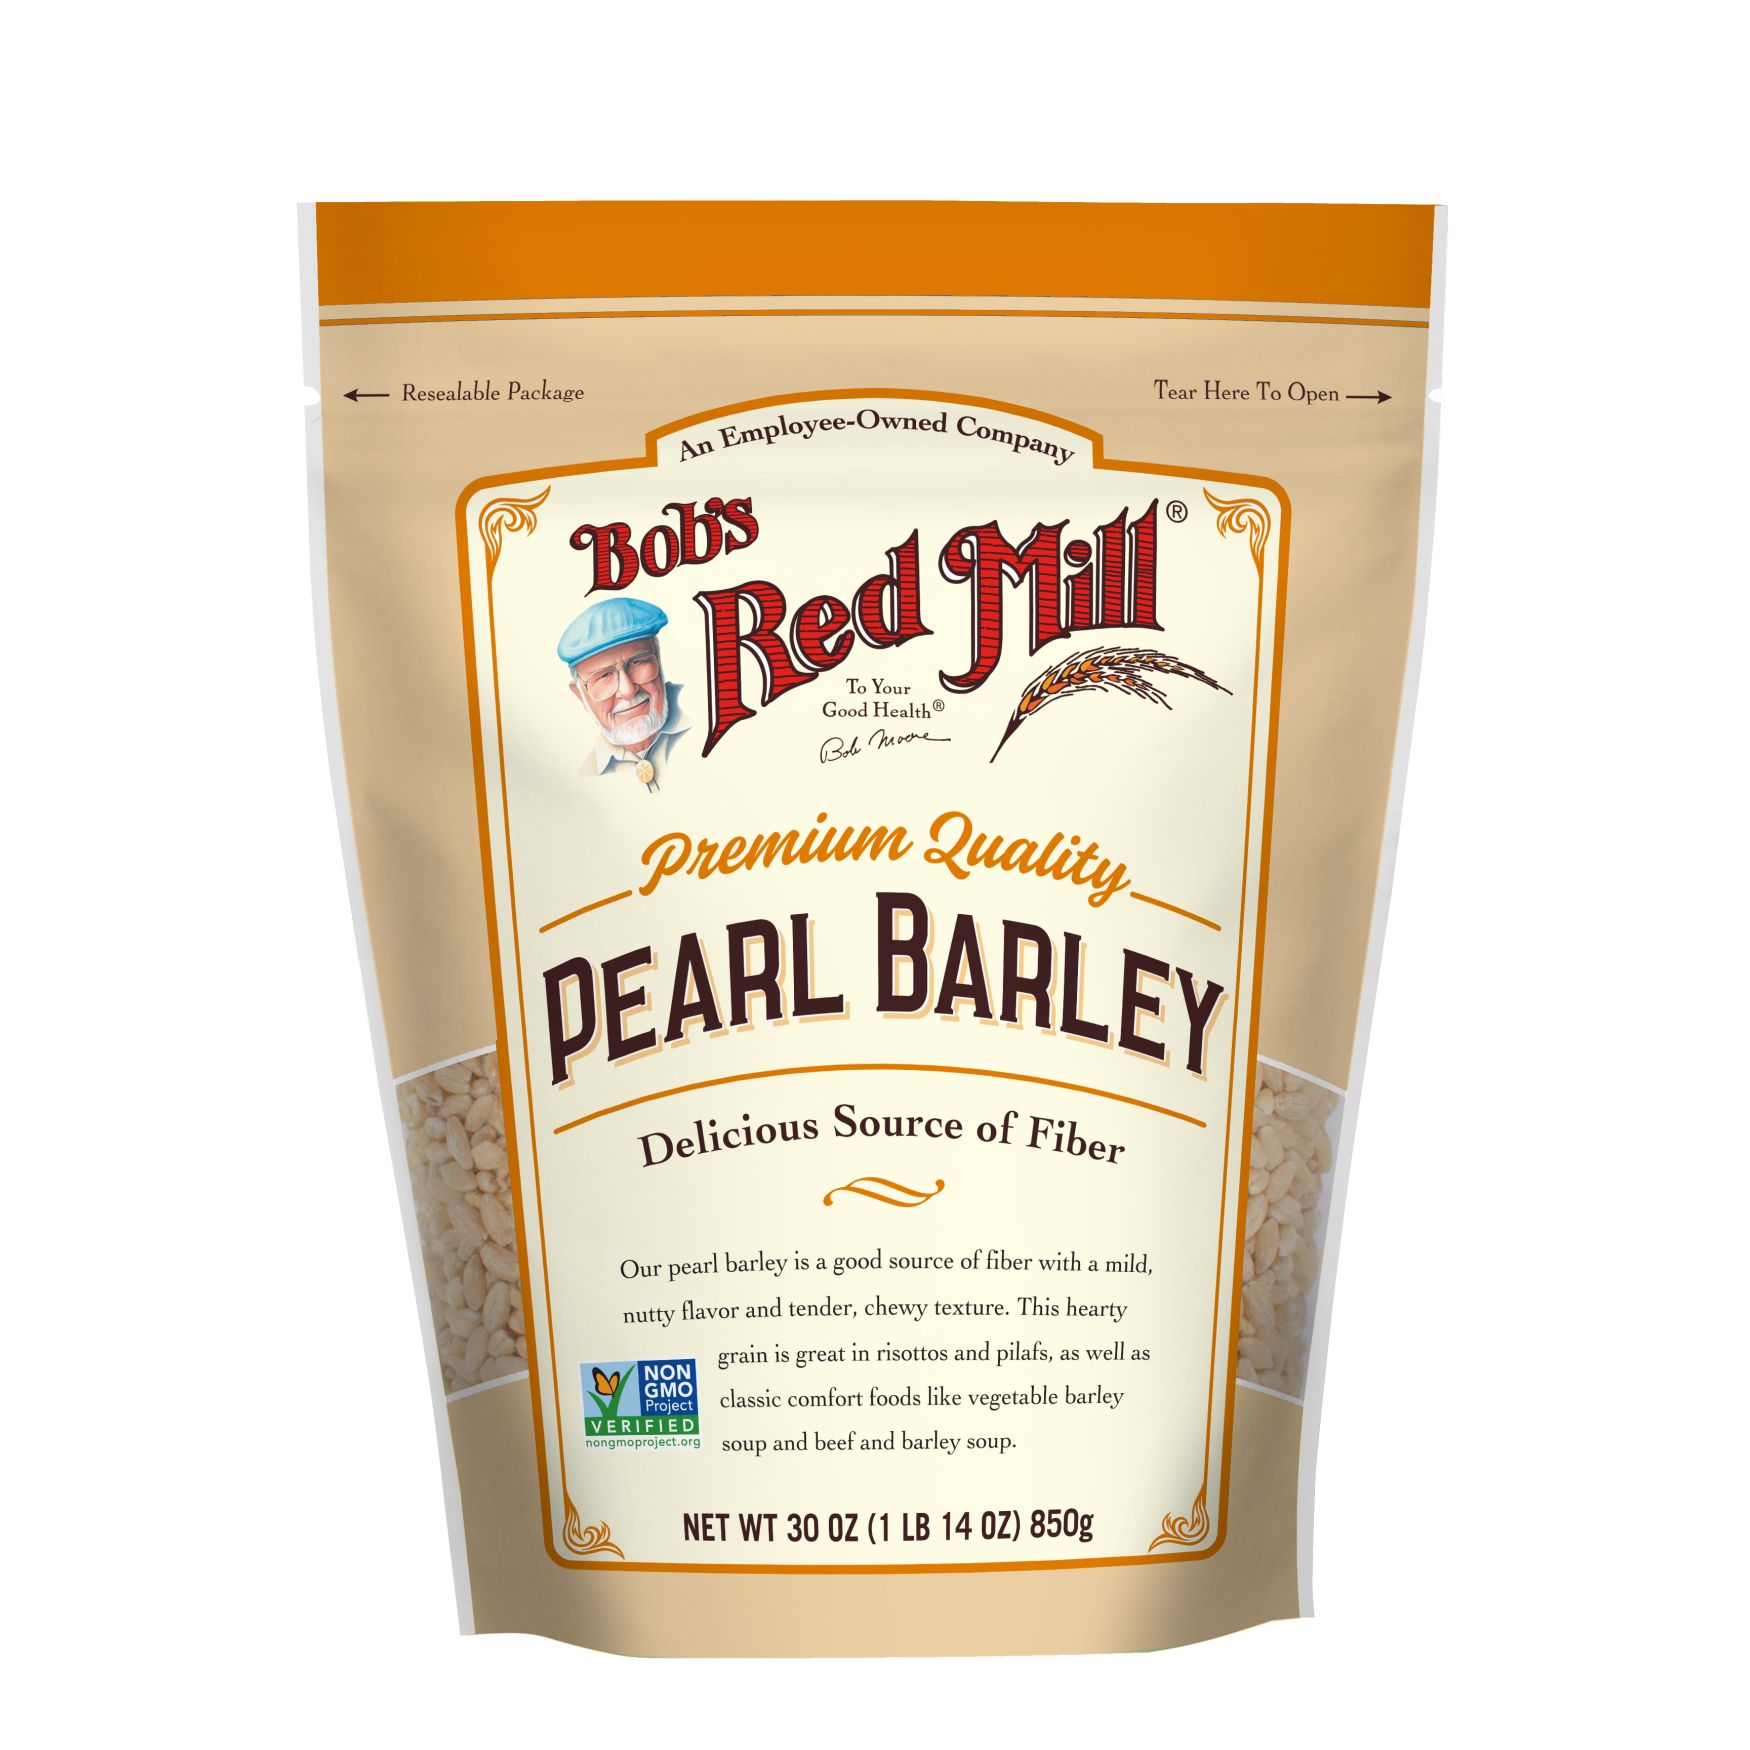 uddrag Aftale forpligtelse Pearl Barley | Bob's Red Mill